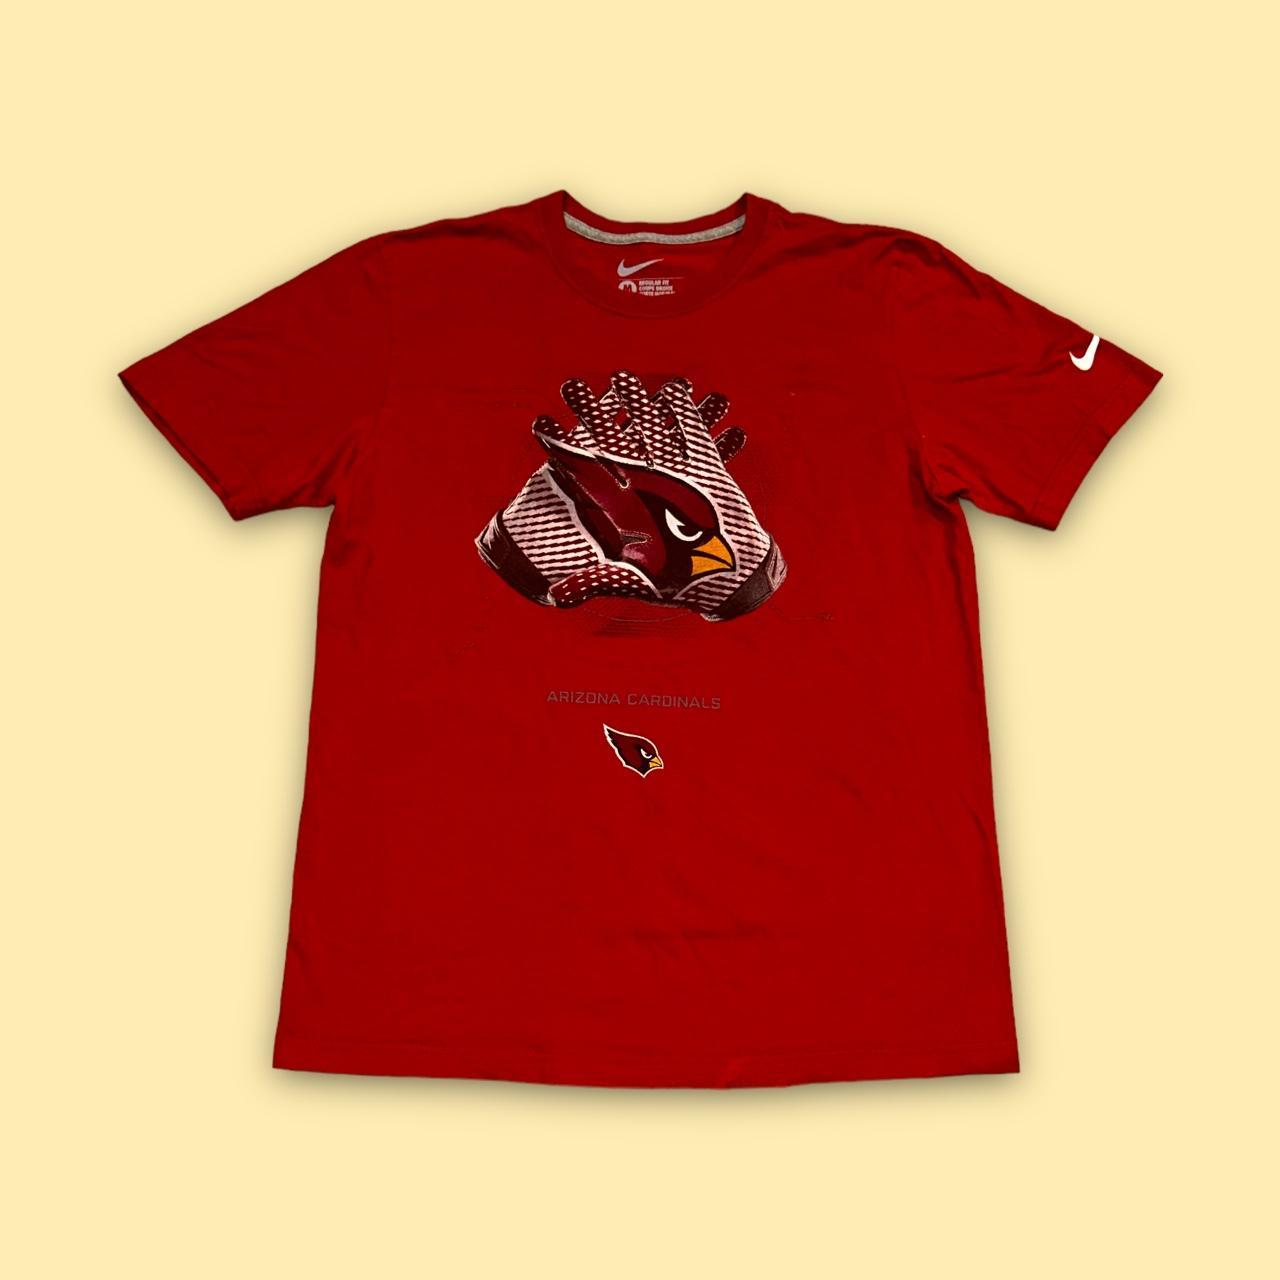 Arizona cardinals Nike football t-shirt Era: - Depop